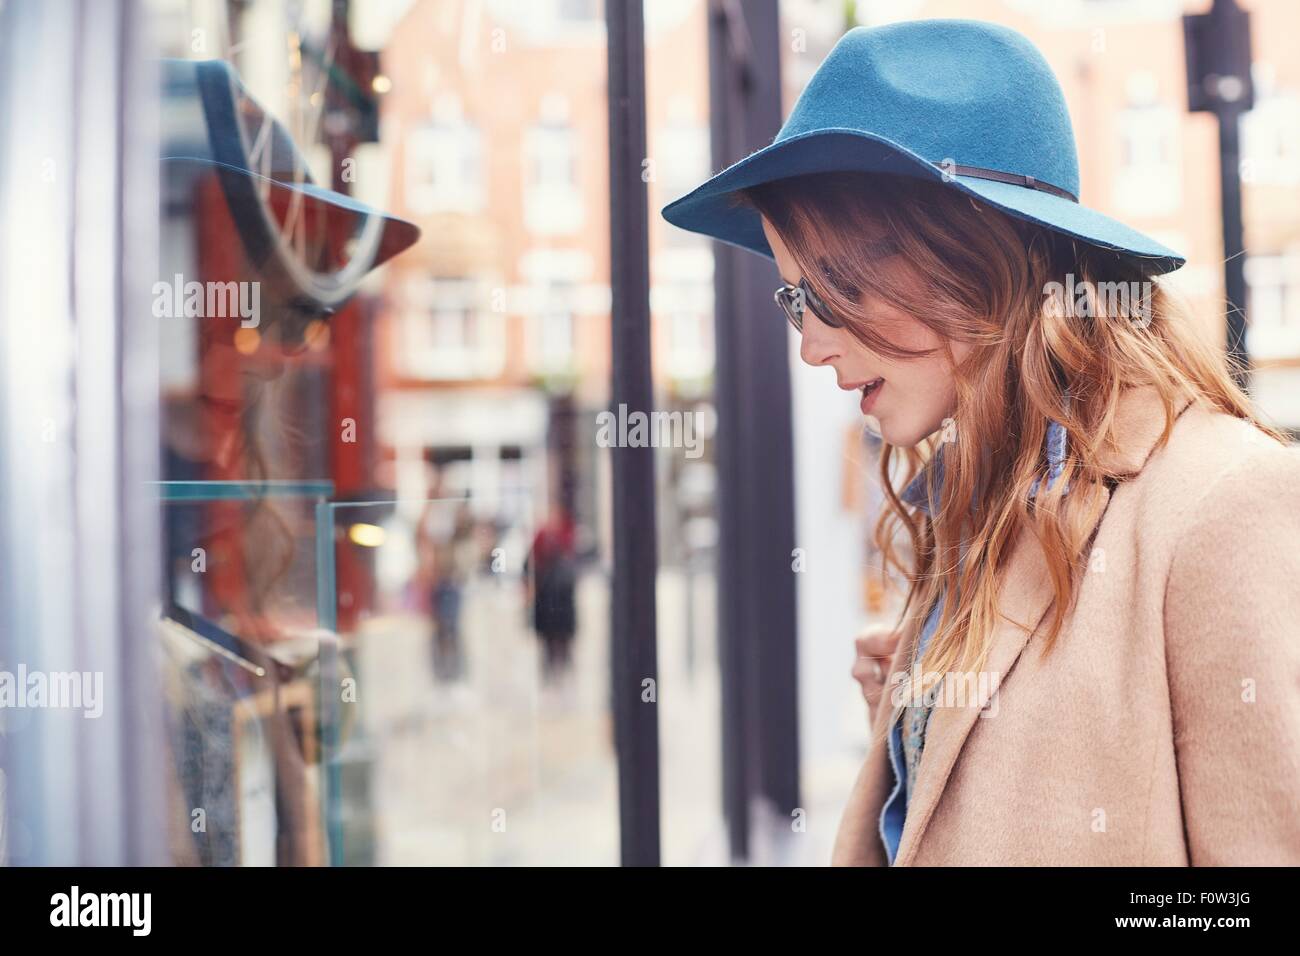 Stilvolle junge weibliche Shopper betrachten Schaufenster, London, UK Stockfoto